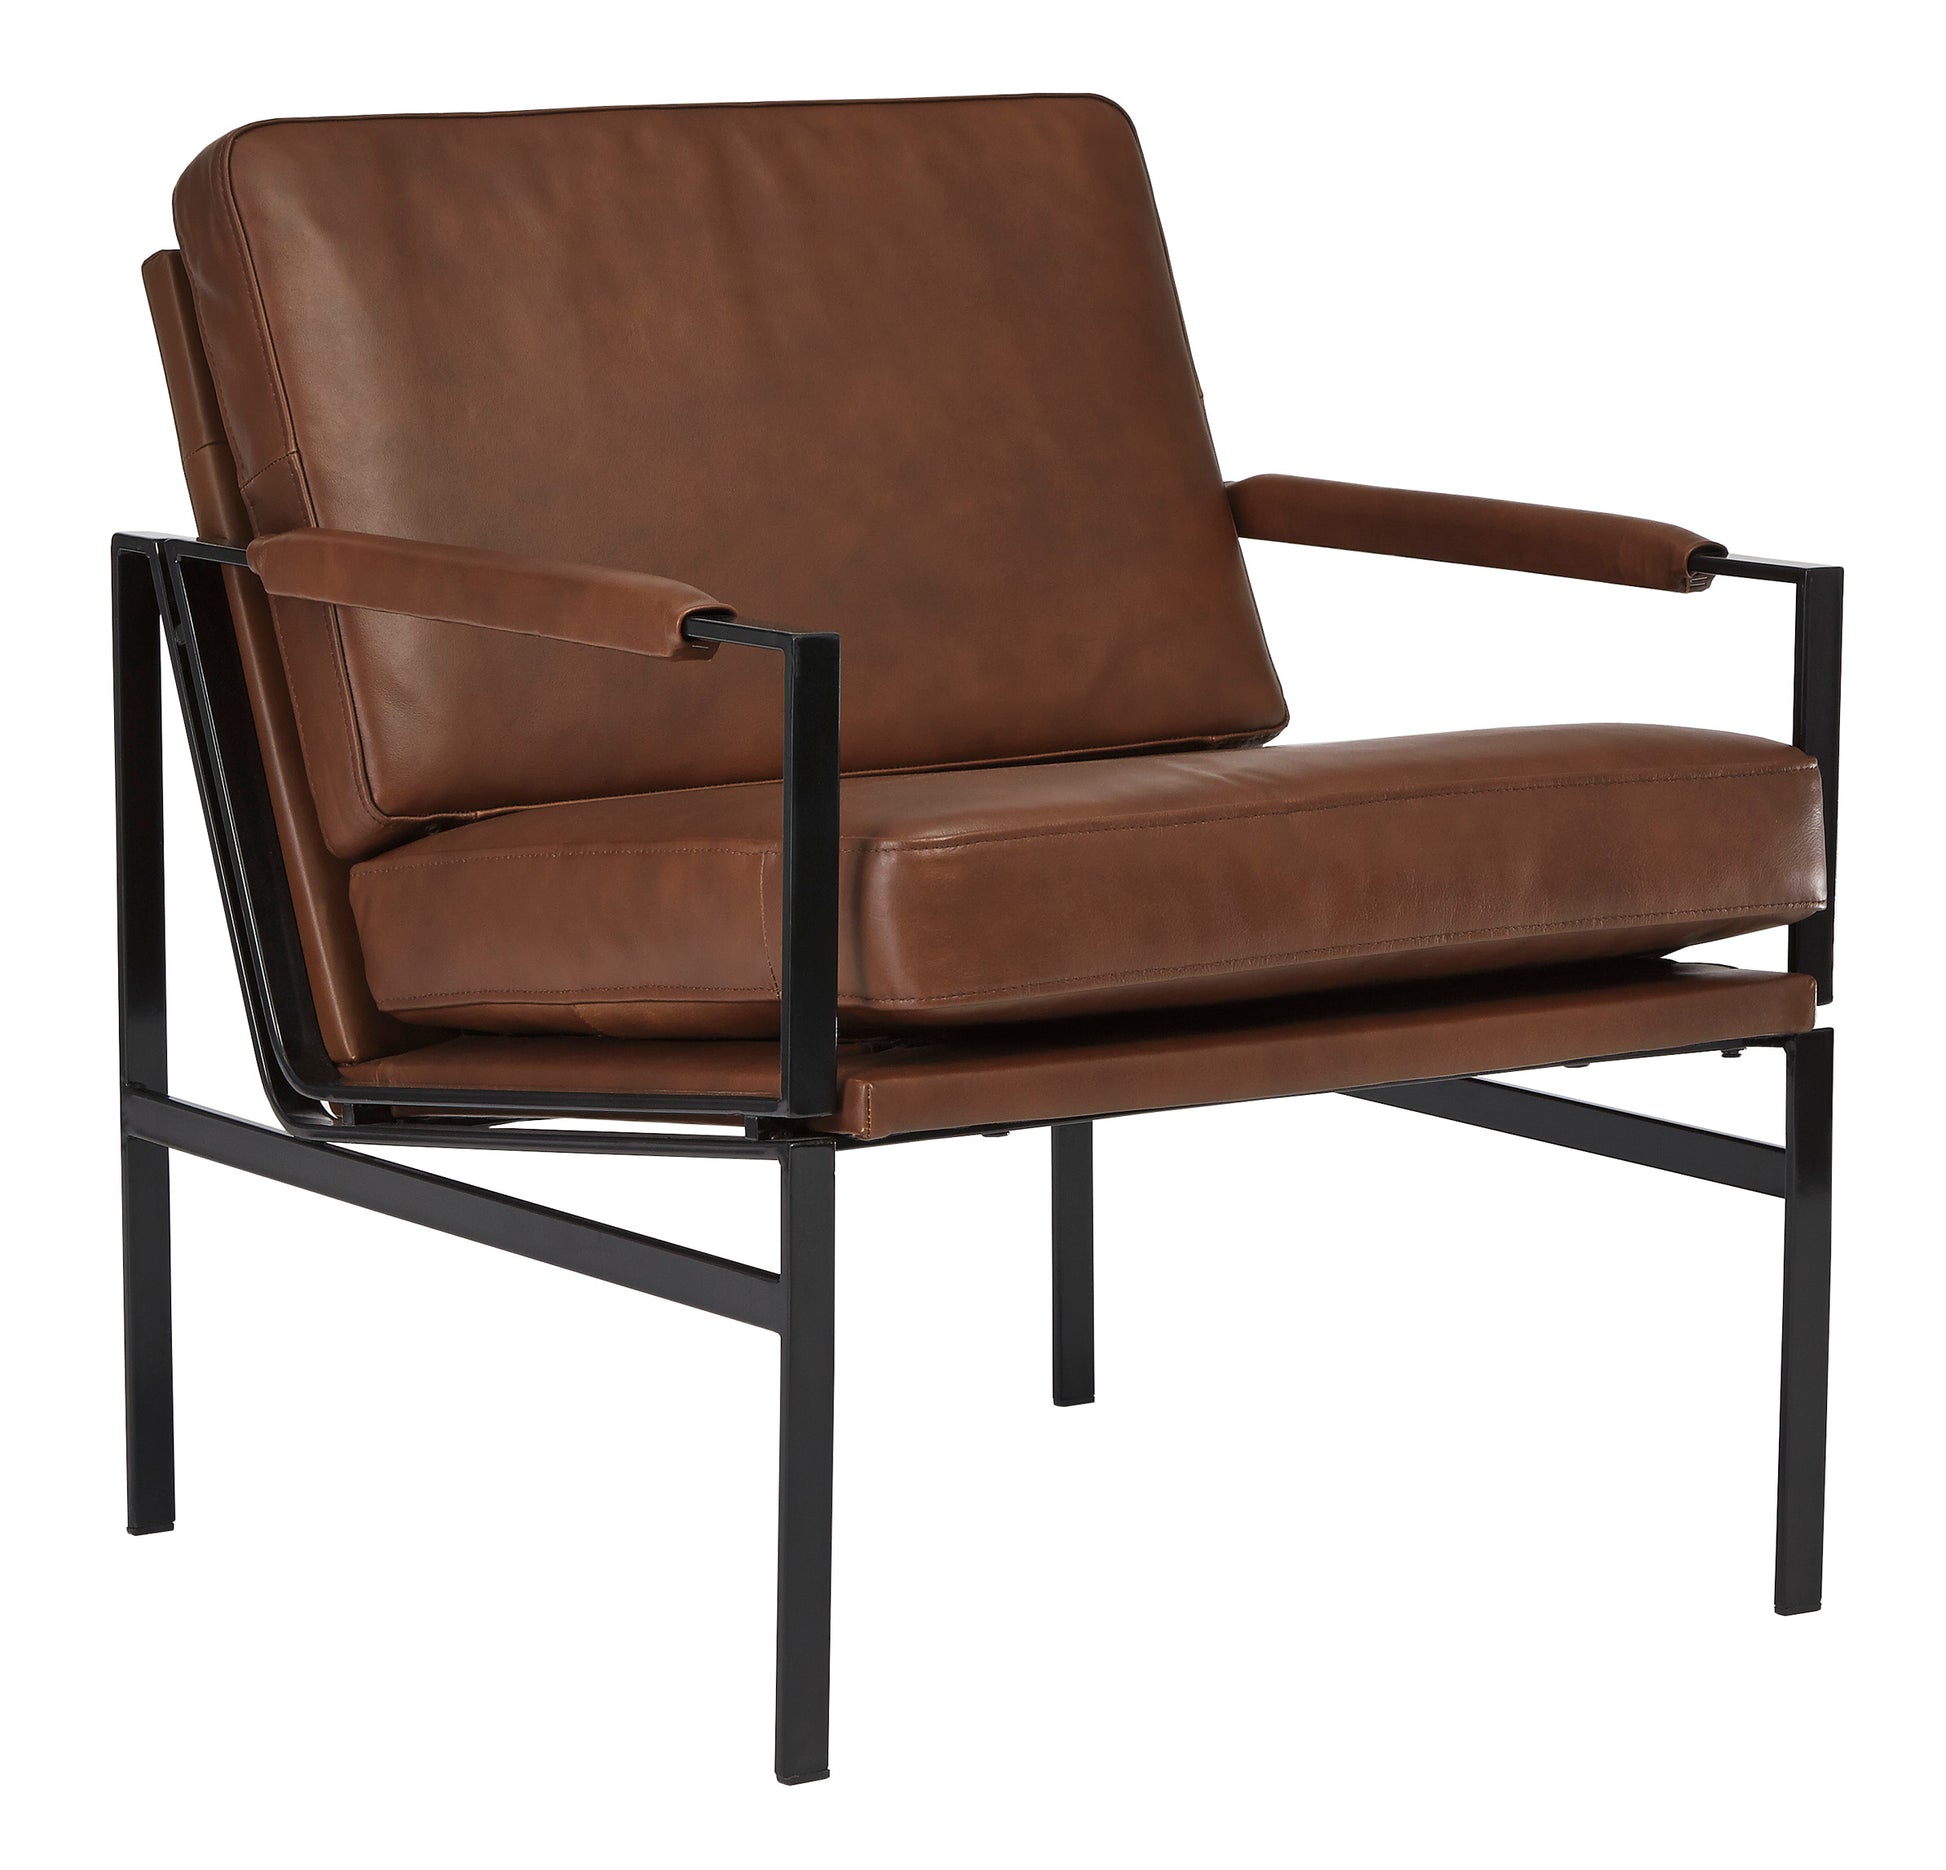 Puckman Accent Chair - Furniture Depot (6143360041133)